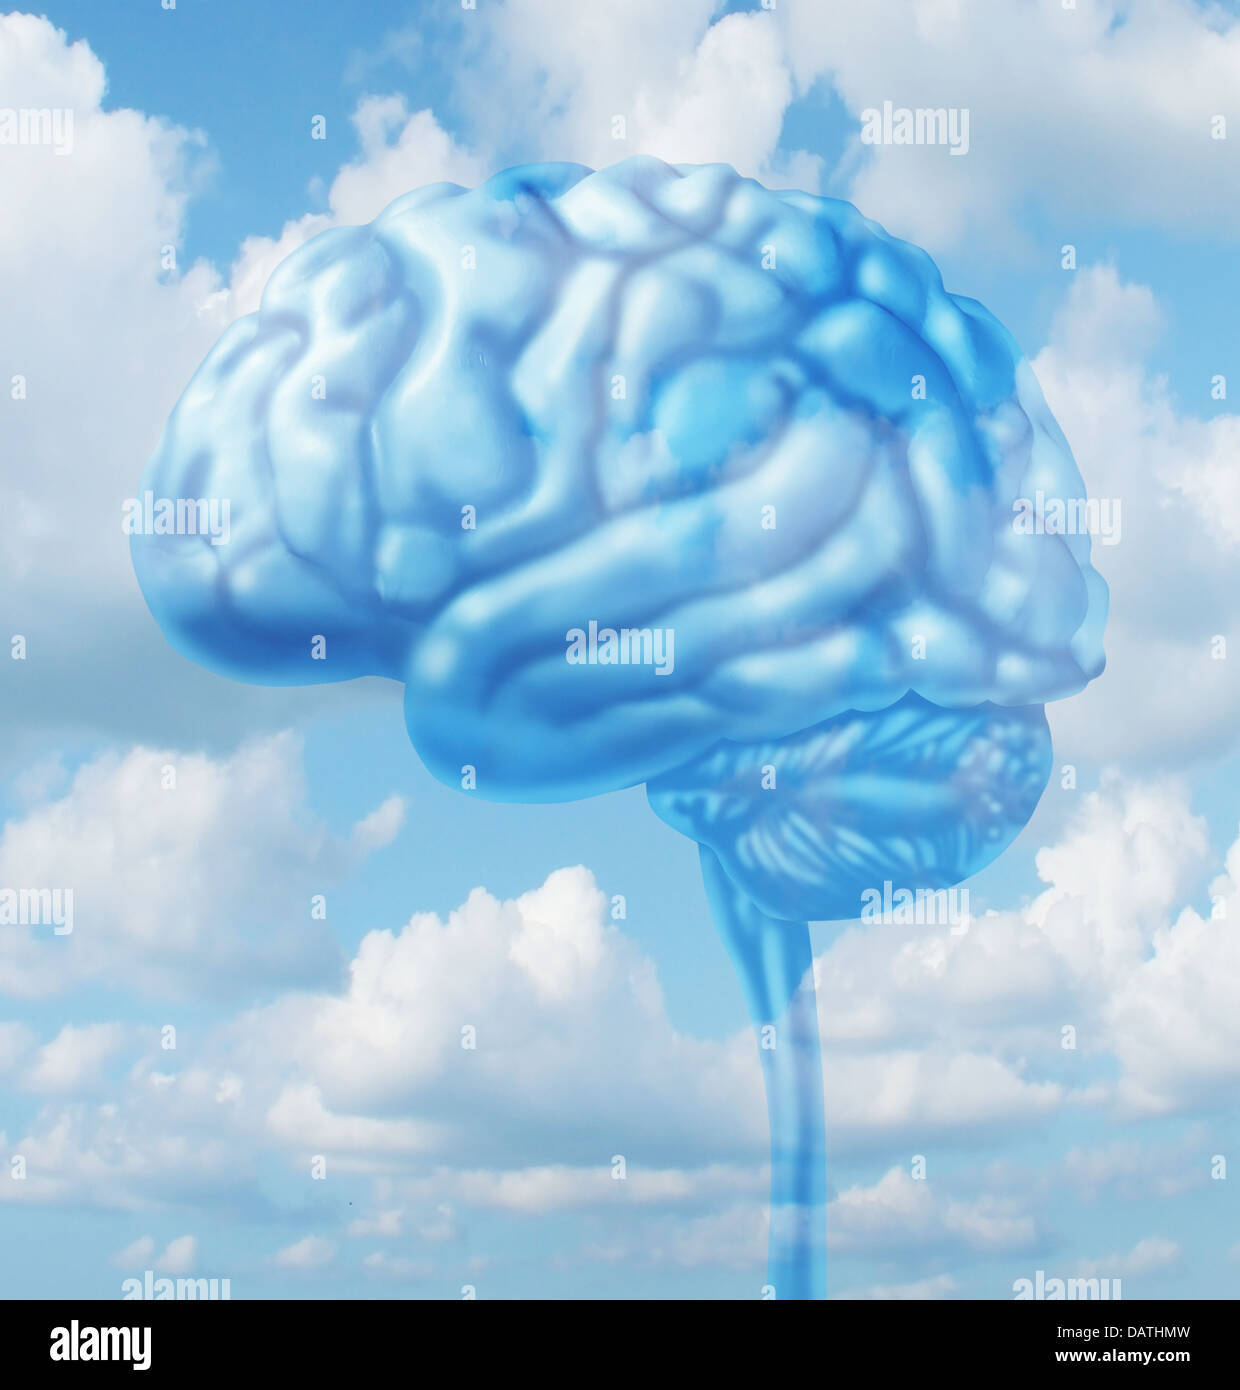 Freies Denken-Lifestyle-Konzept mit einem menschlichen Gehirn-Organ schweben in den Himmel mit Wolken, frische intelligente kreative darstellt Stockfoto